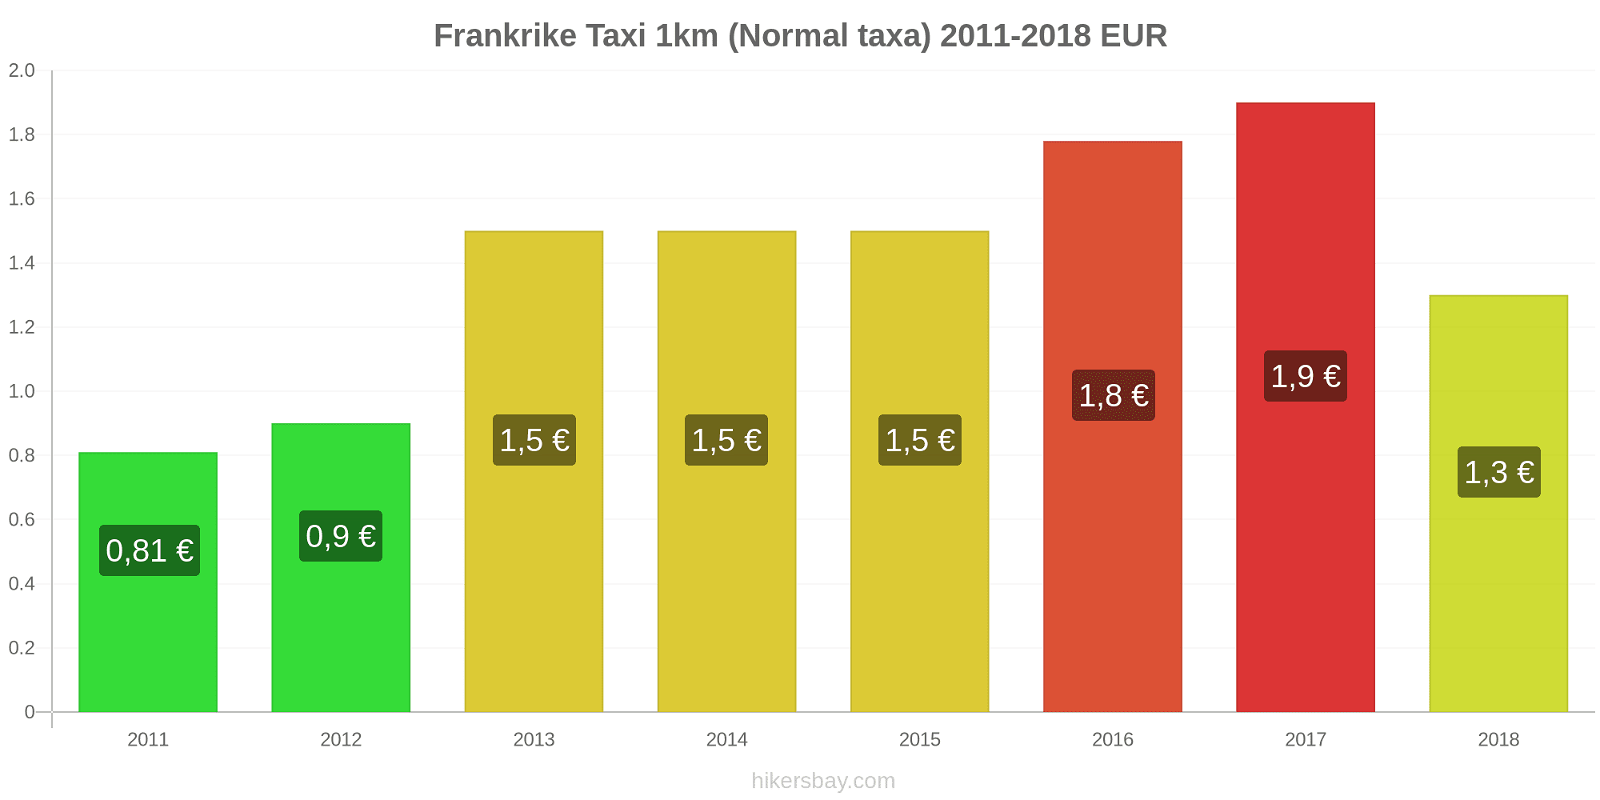 Frankrike prisändringar Taxi 1km (Normal taxa) hikersbay.com